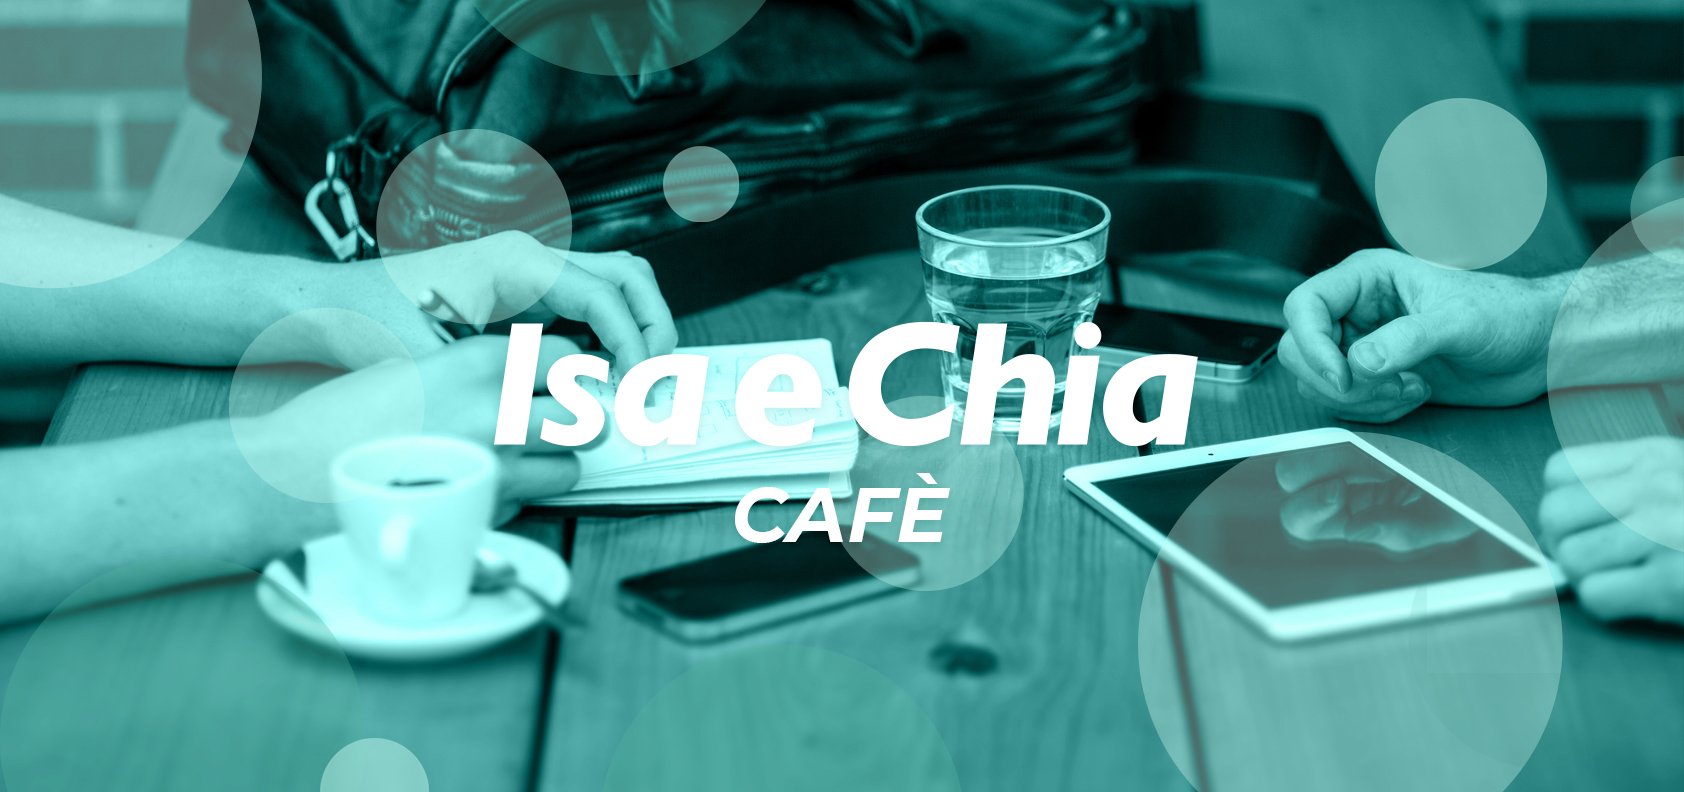 Isa e Chia Cafè, l’angolo delle chiacchiere in libertà (8/06/22)